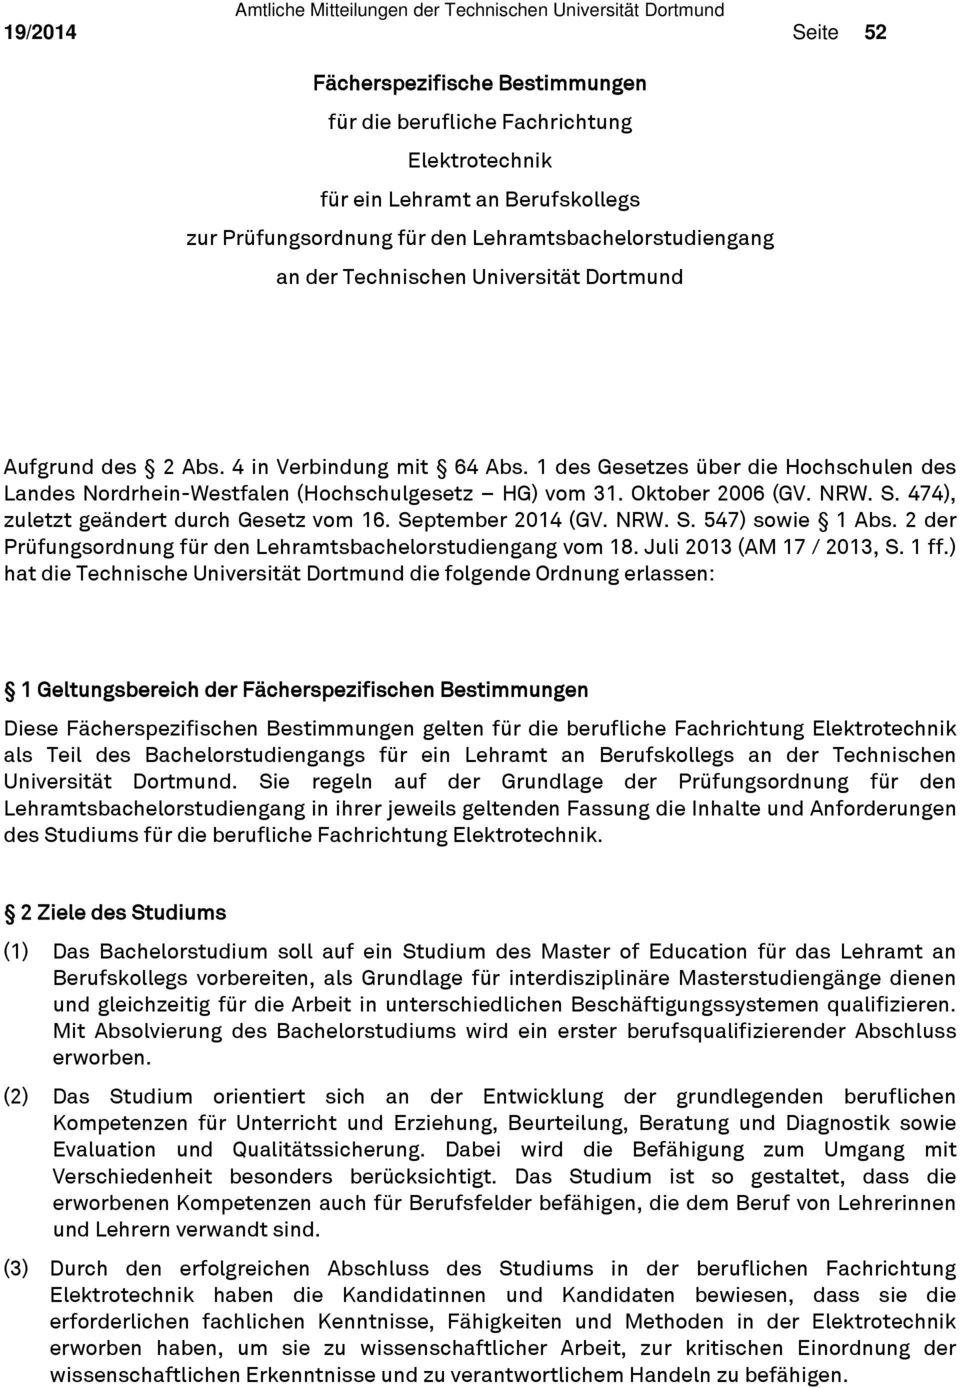 S. 474), zuletzt geändert durch Gesetz vom 16. September 2014 (GV. NRW. S. 547) sowie 1 Abs. 2 der Prüfungsordnung für den Lehramtsbachelorstudiengang vom 18. Juli 2013 (AM 17 / 2013, S. 1 ff.